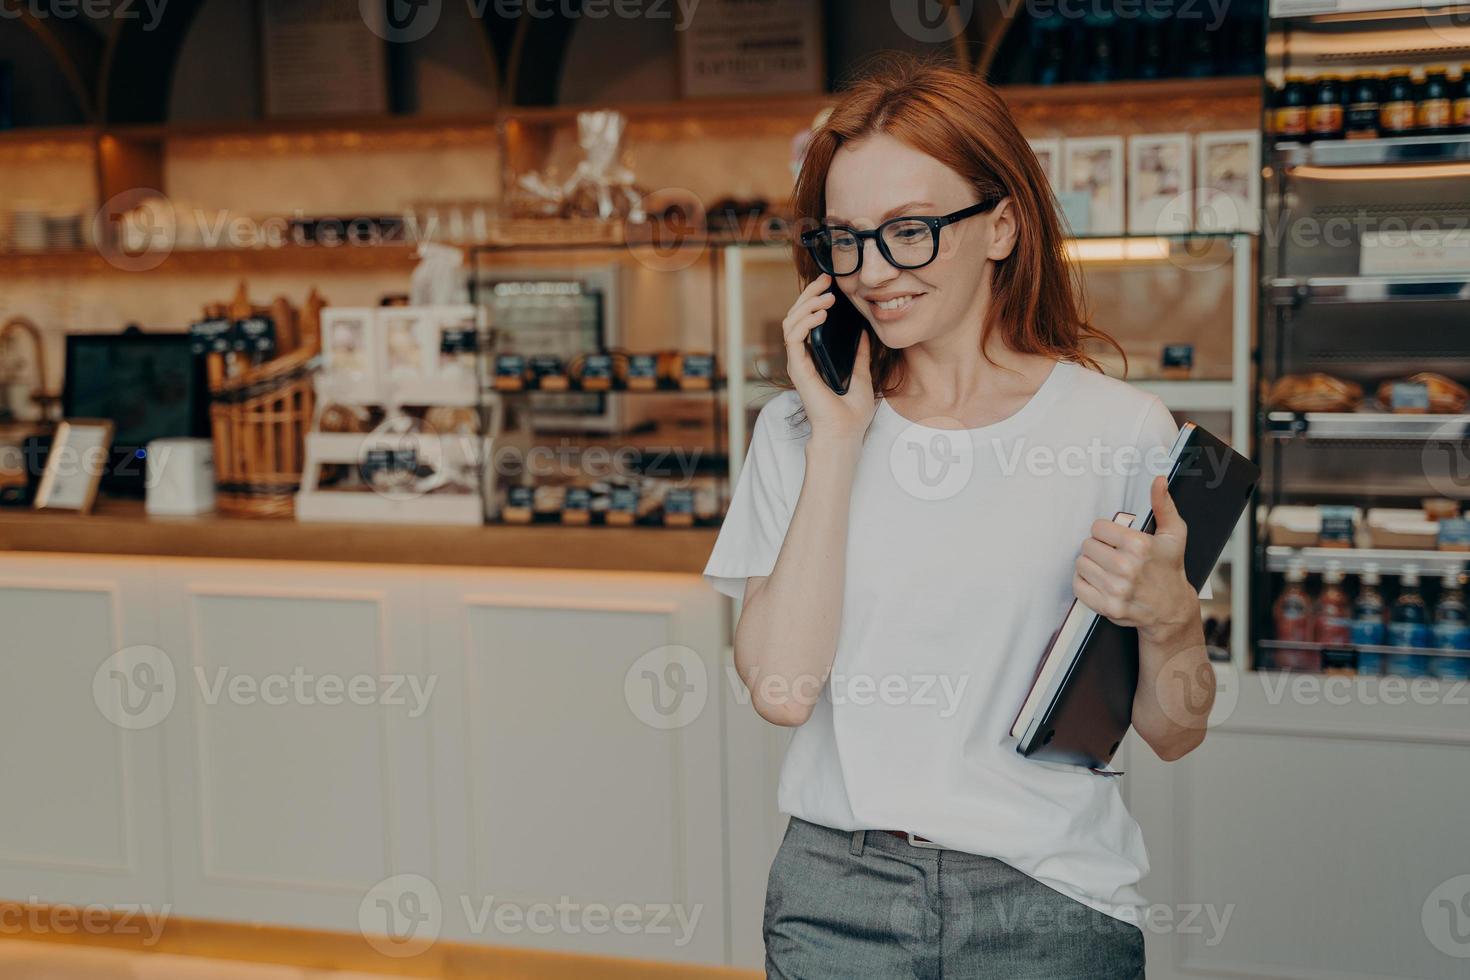 jonge, aangename roodharige vrouw freelancer die aan de telefoon praat en glimlacht terwijl ze café-koffieshop verlaat foto